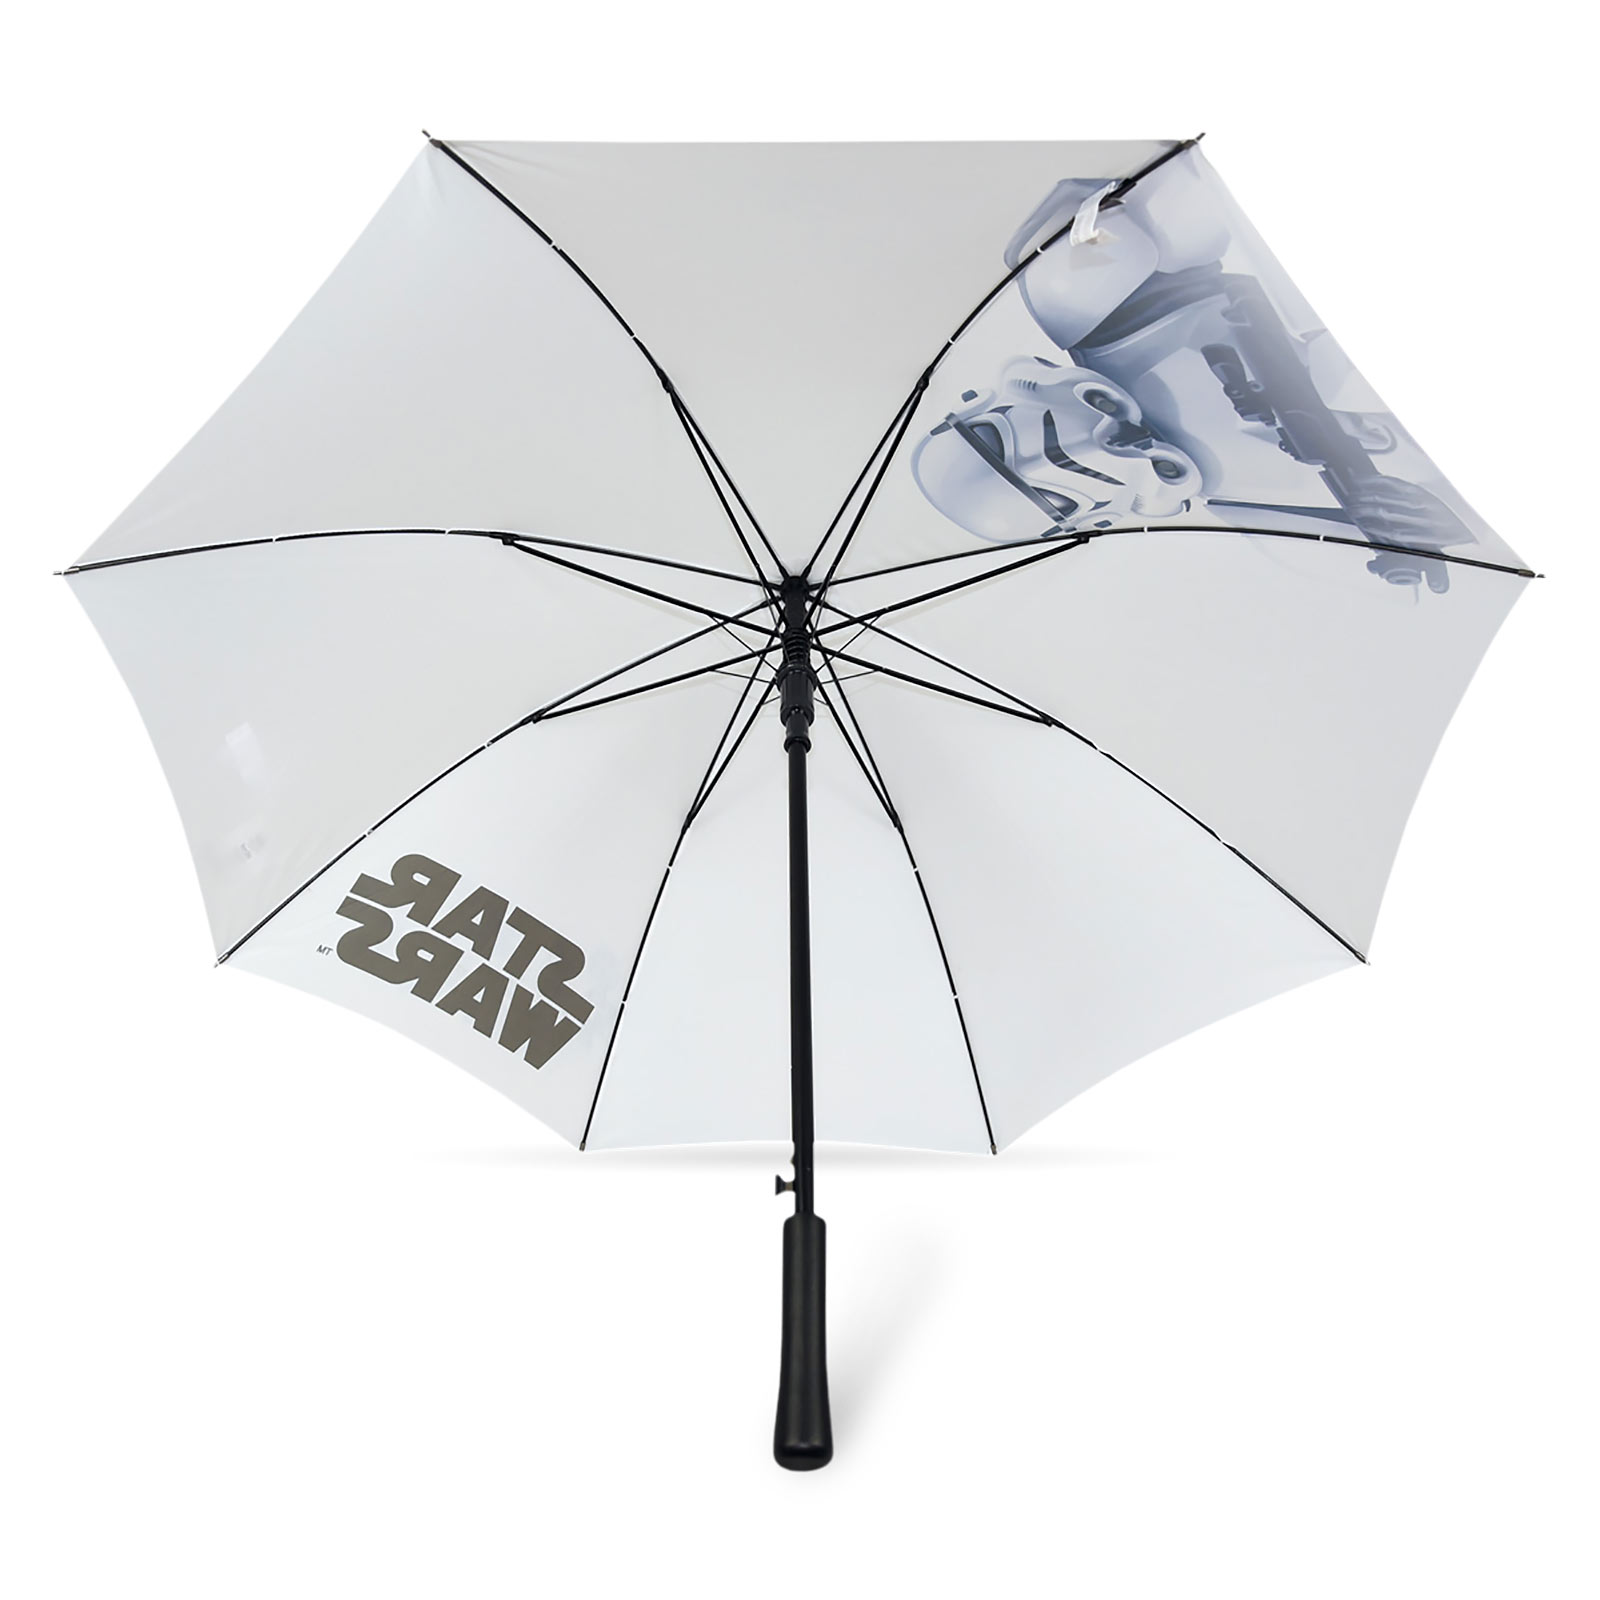 Star Wars - Stormtrooper Paraplu